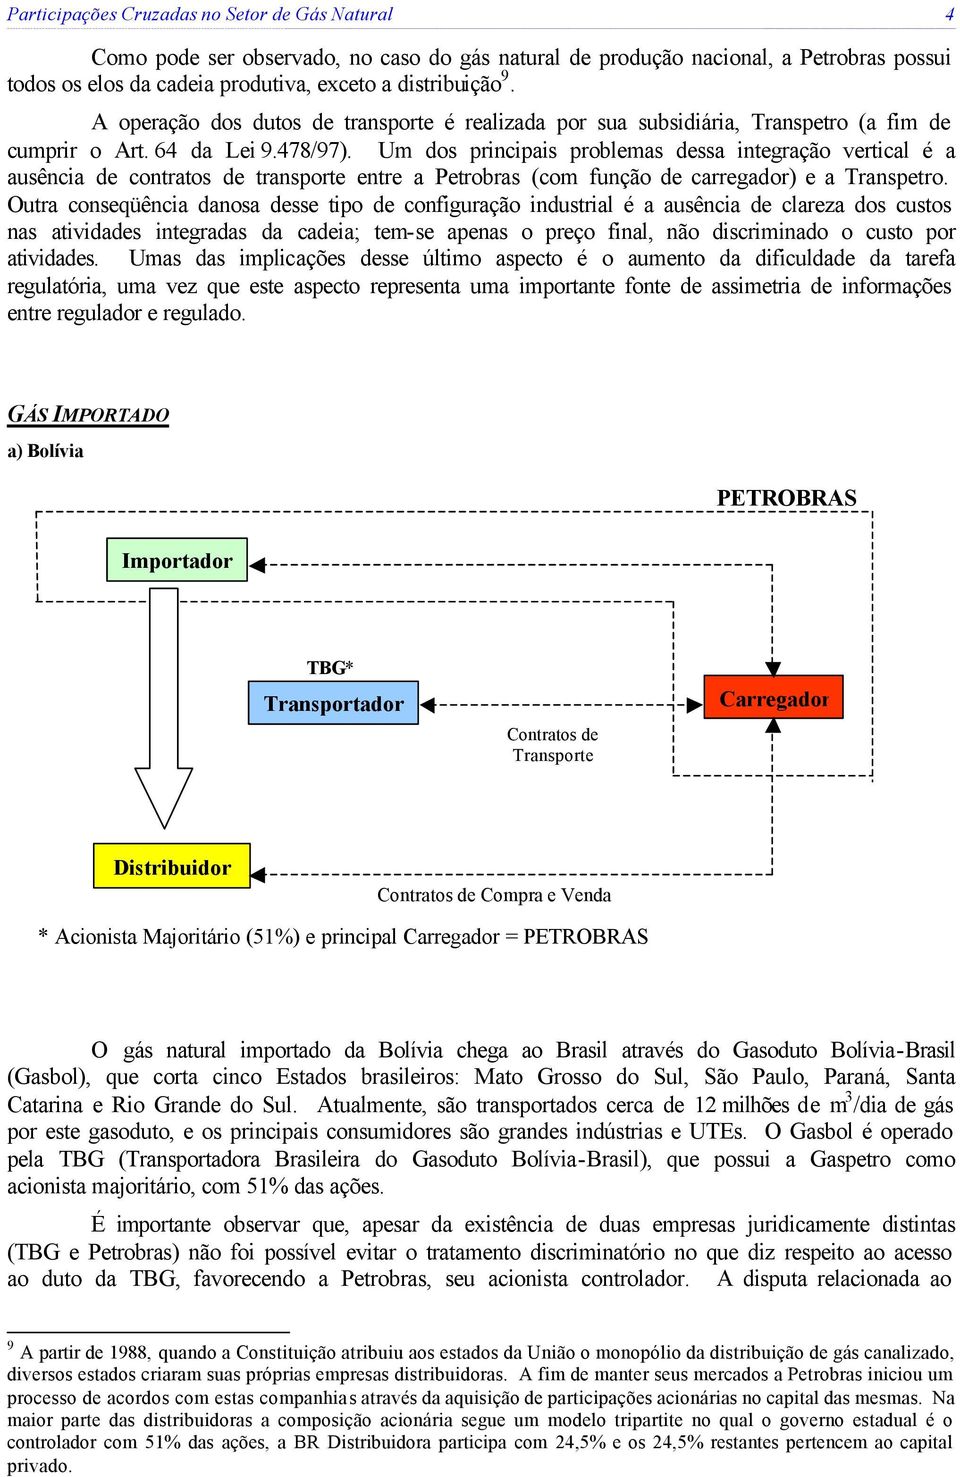 Um dos principais problemas dessa integração vertical é a ausência de contratos de transporte entre a Petrobras (com função de carregador) e a Transpetro.